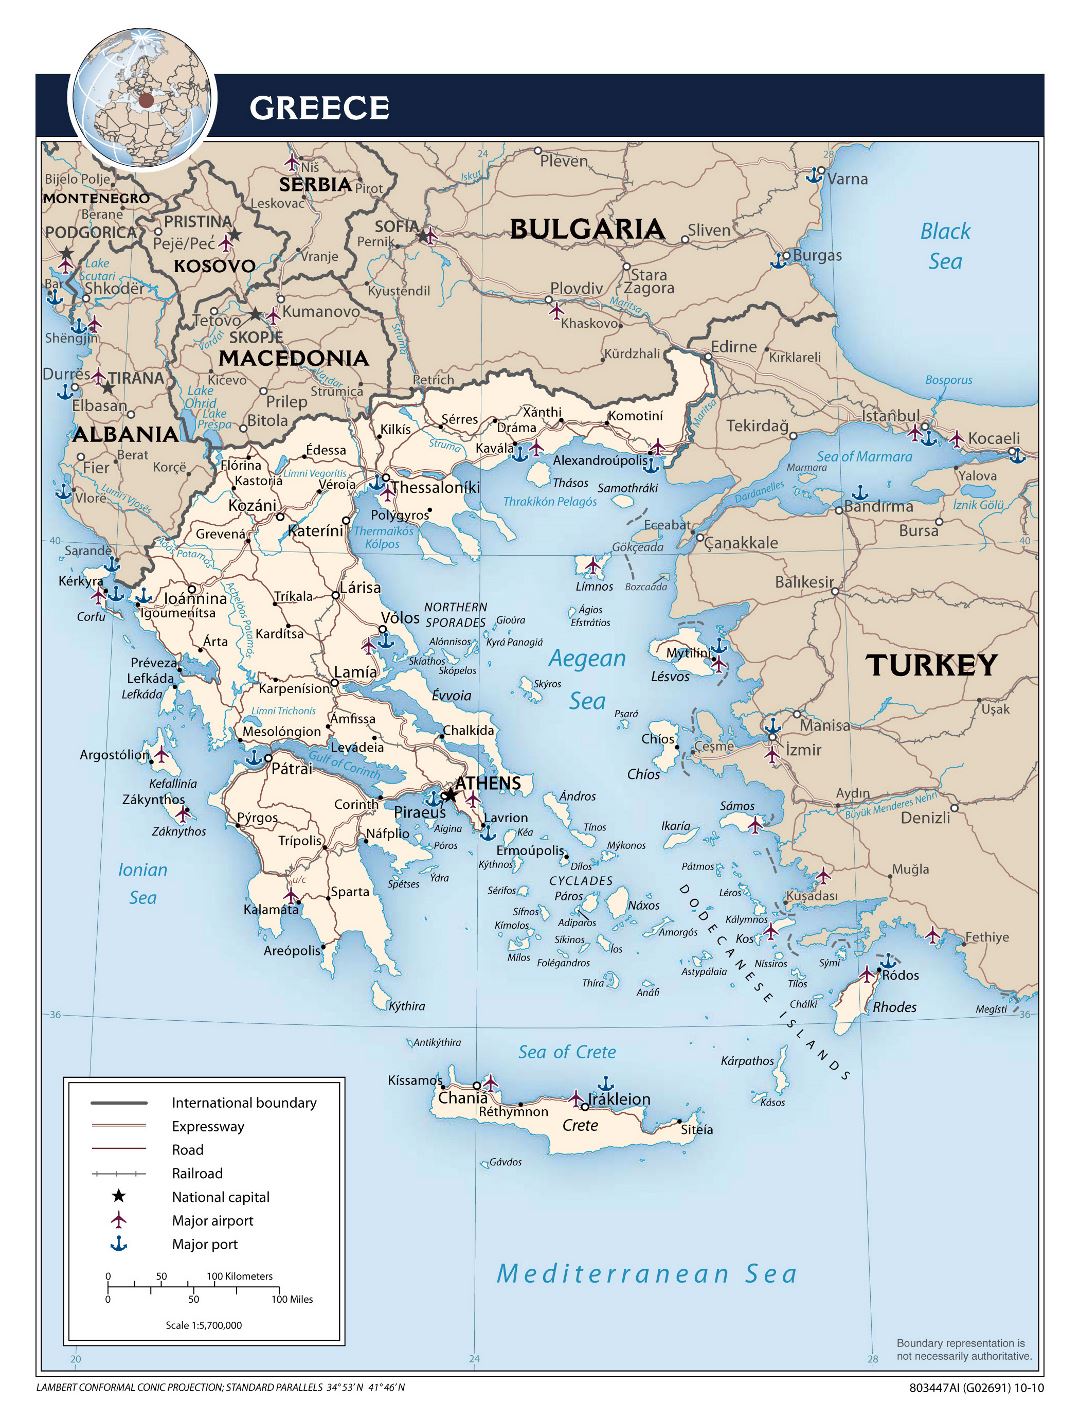 Mapa político a gran escala de Grecia con las carreteras, las principales ciudades, aeropuertos y puertos marítimos - 2010